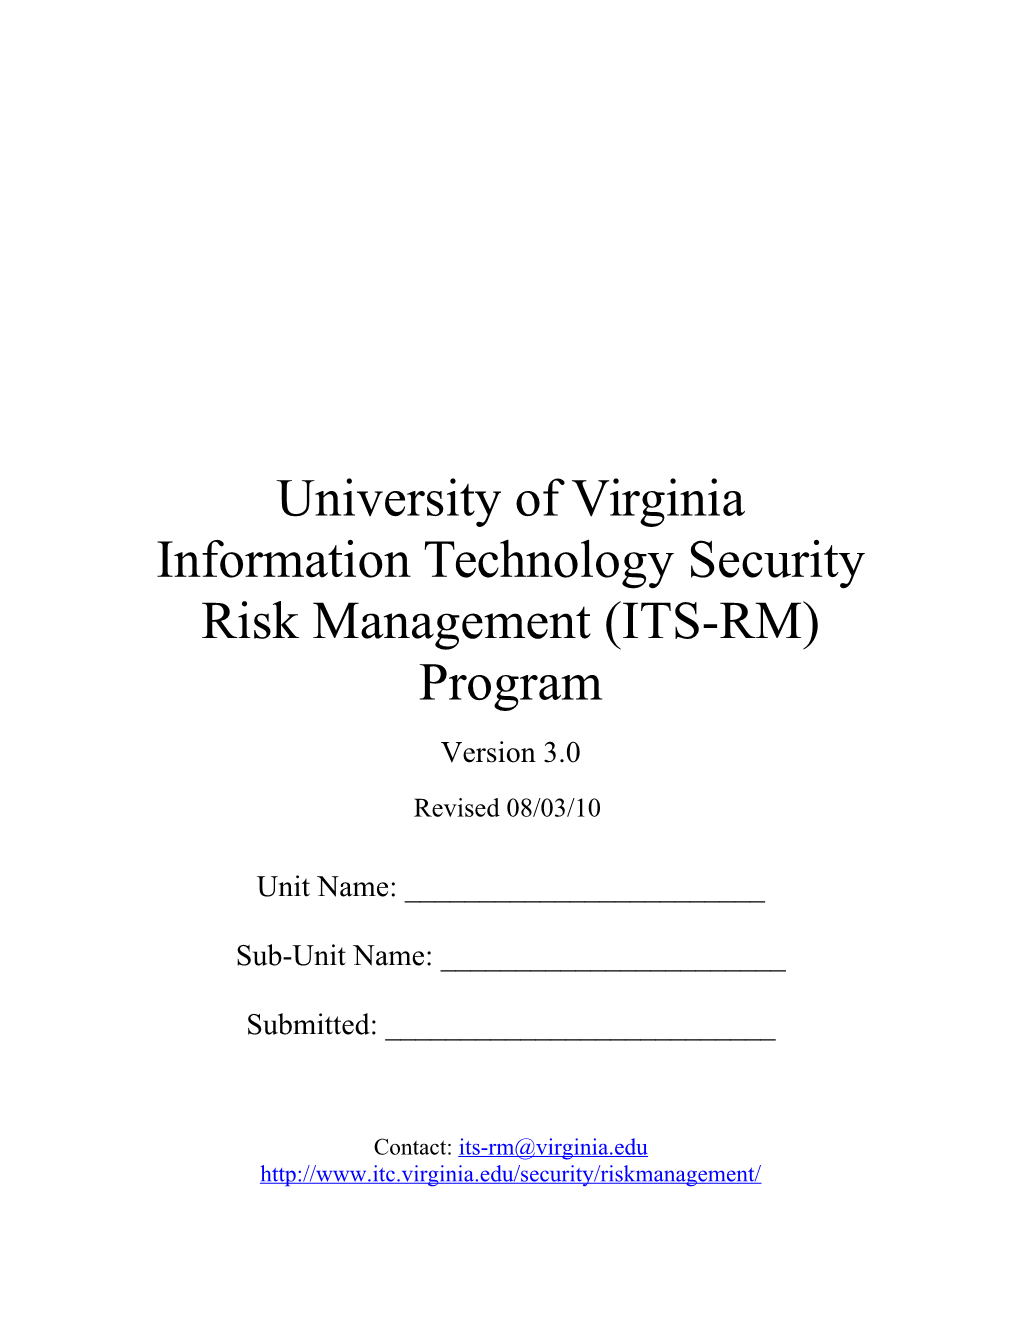 U.Va. IT Security Risk Management Program